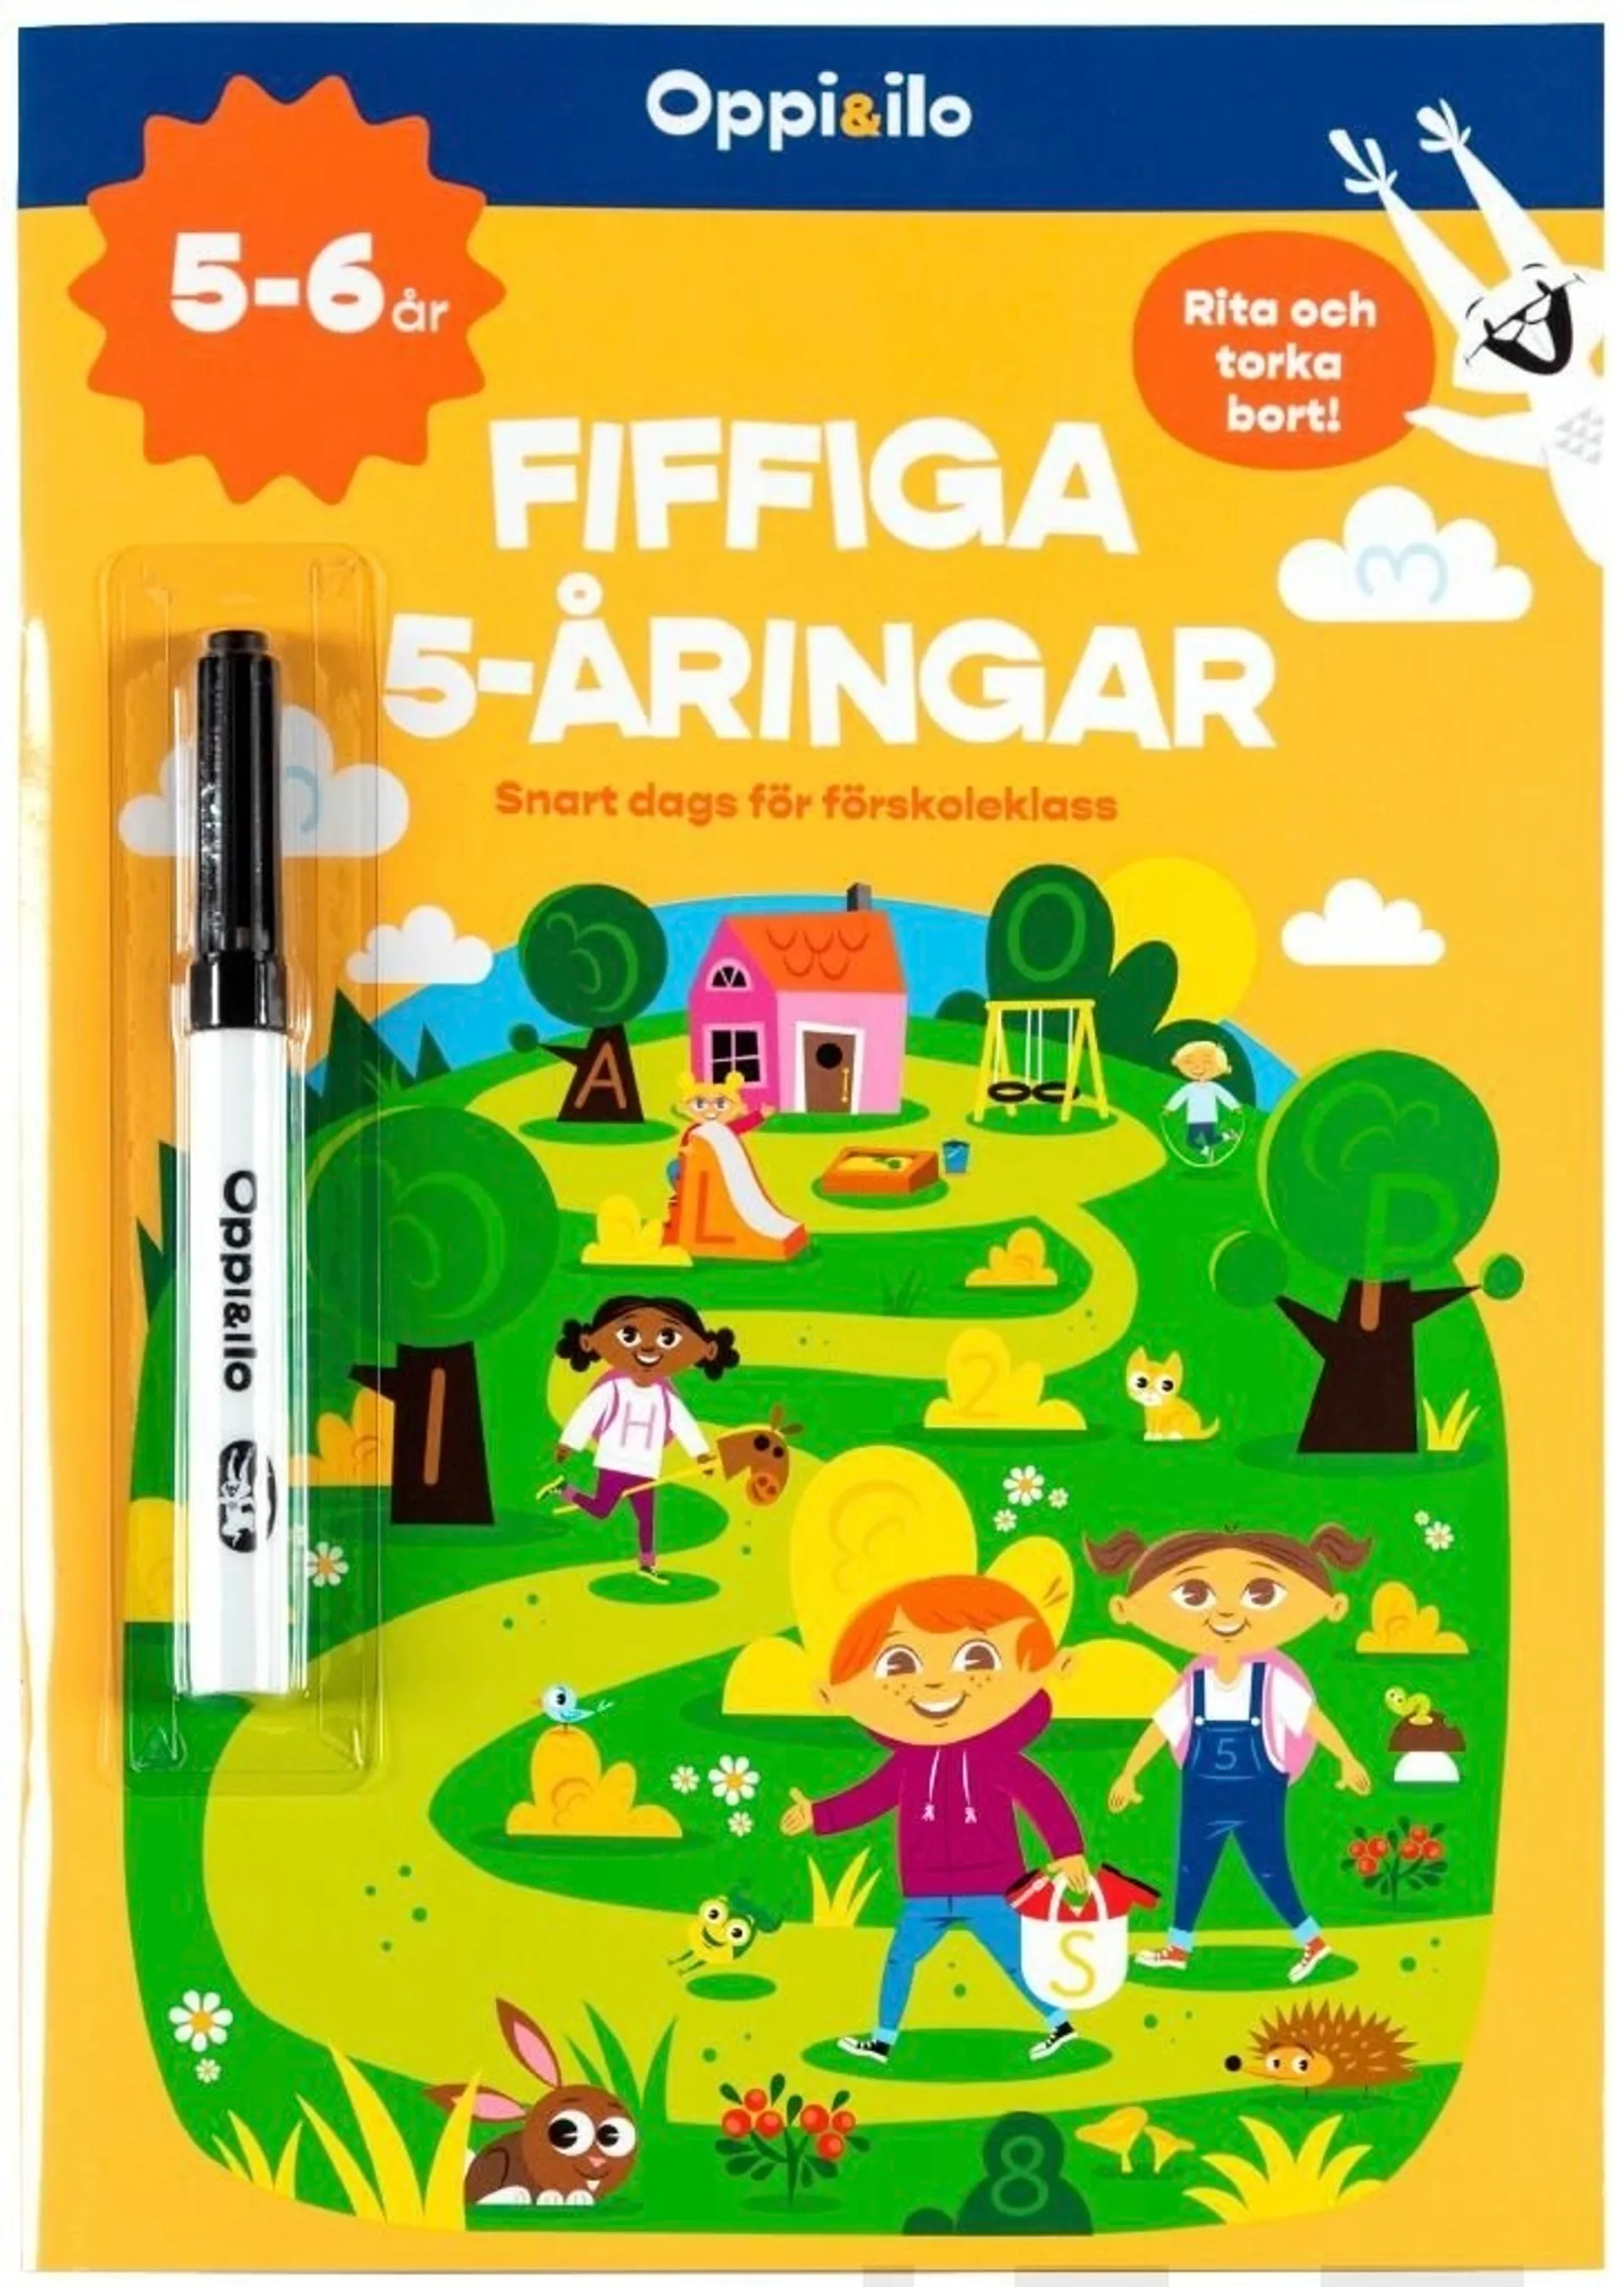 Laitila, Fiffiga 5-åringar -pysselbok 5-6 år - Snart dags för förskoleklass